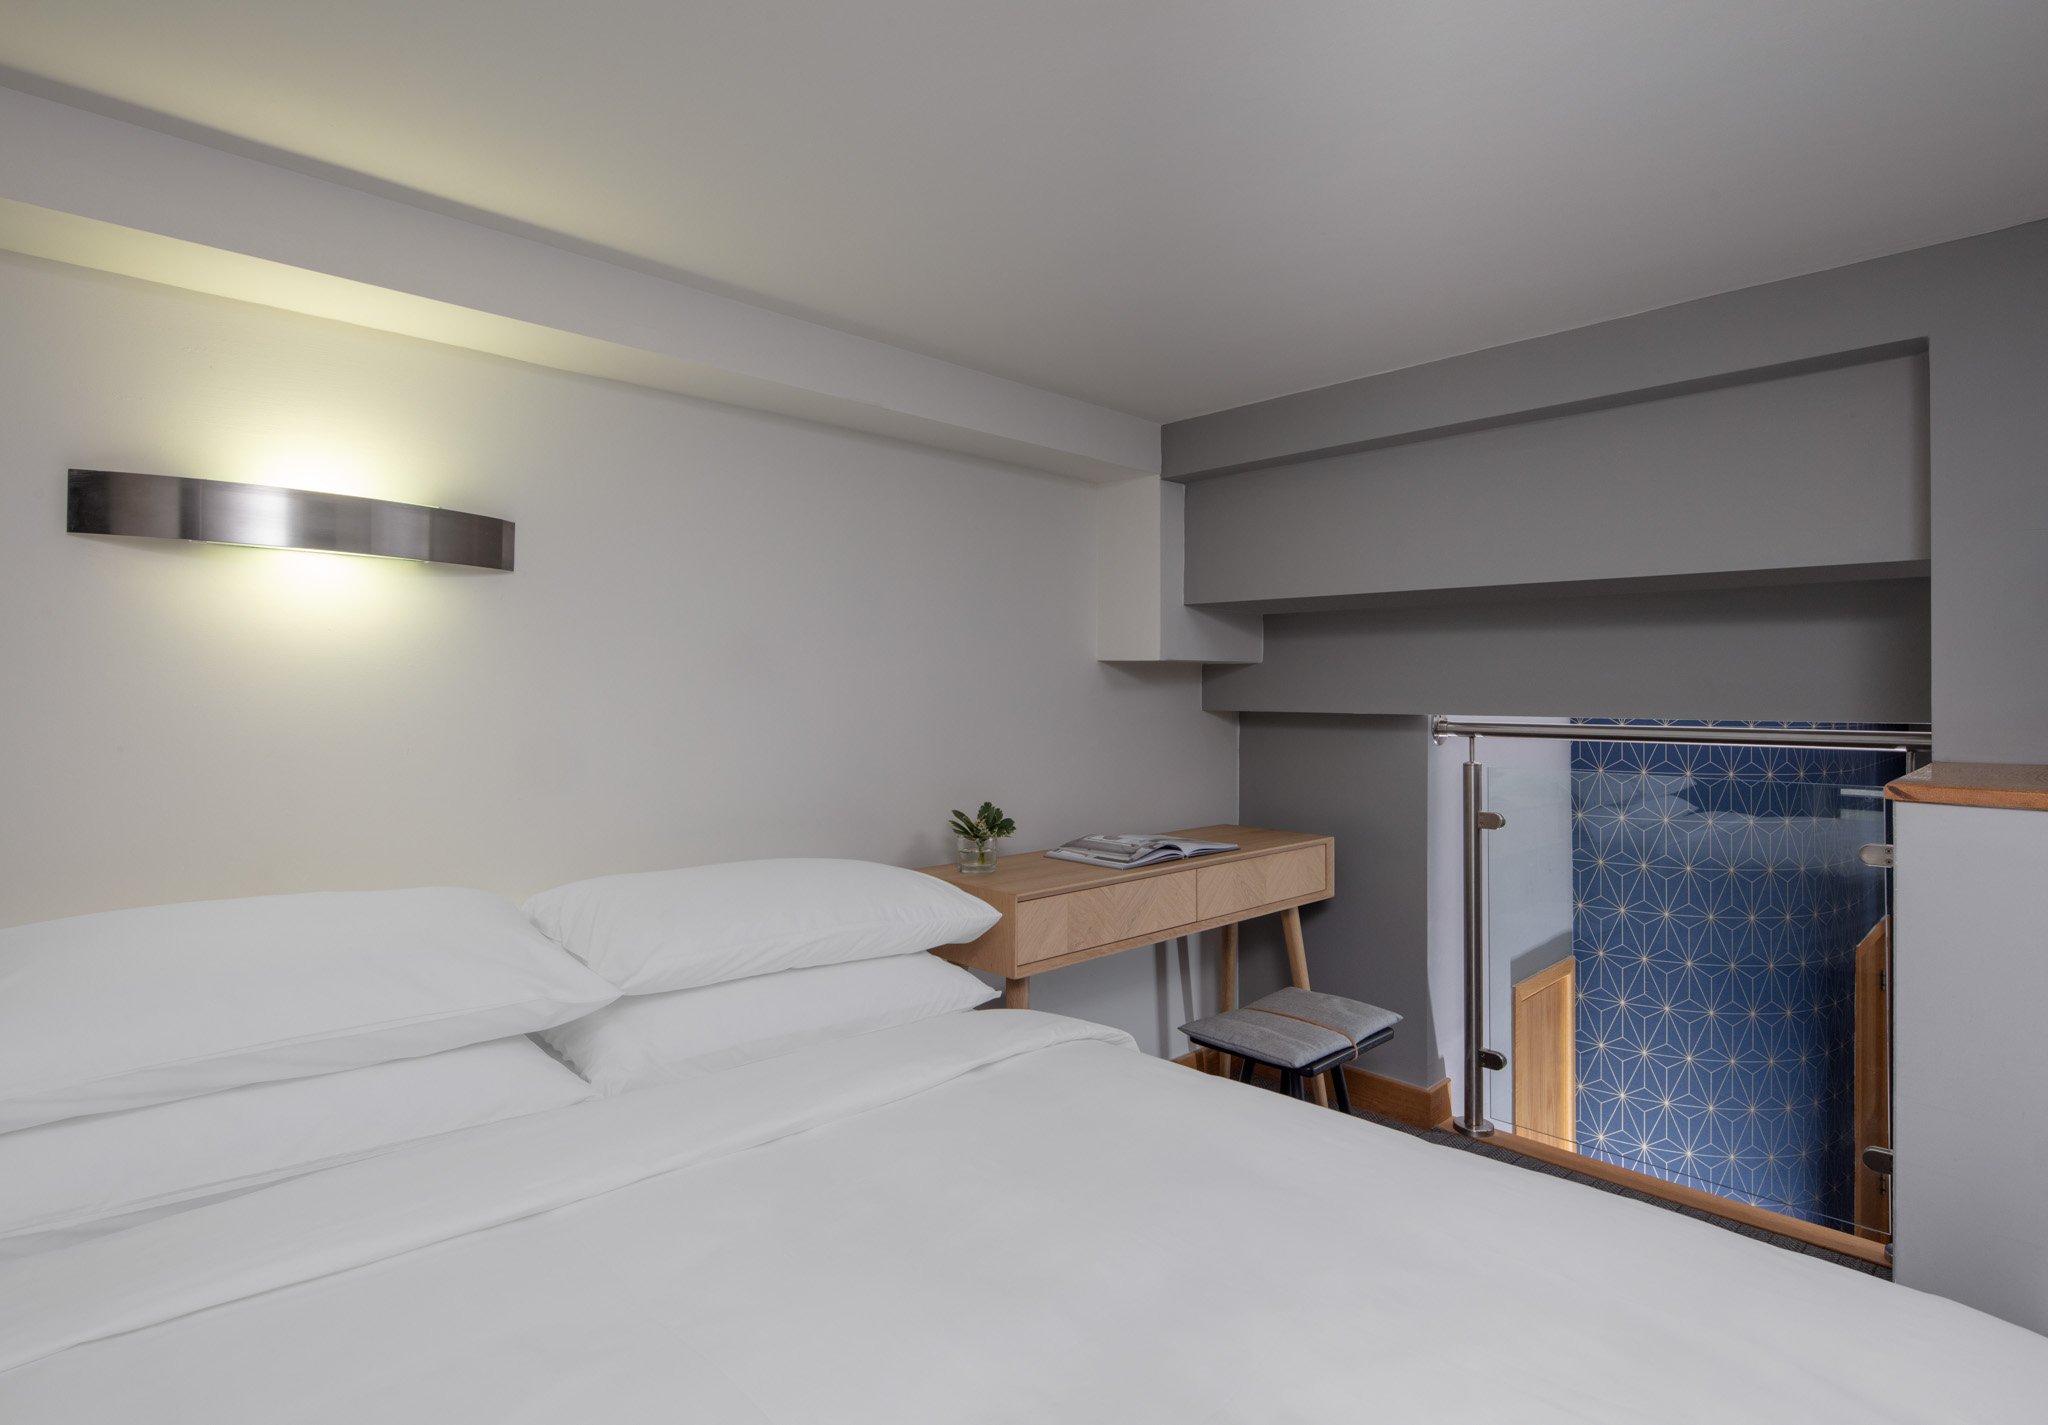 1. Open Plan Studio for 2 - Bedroom Space view